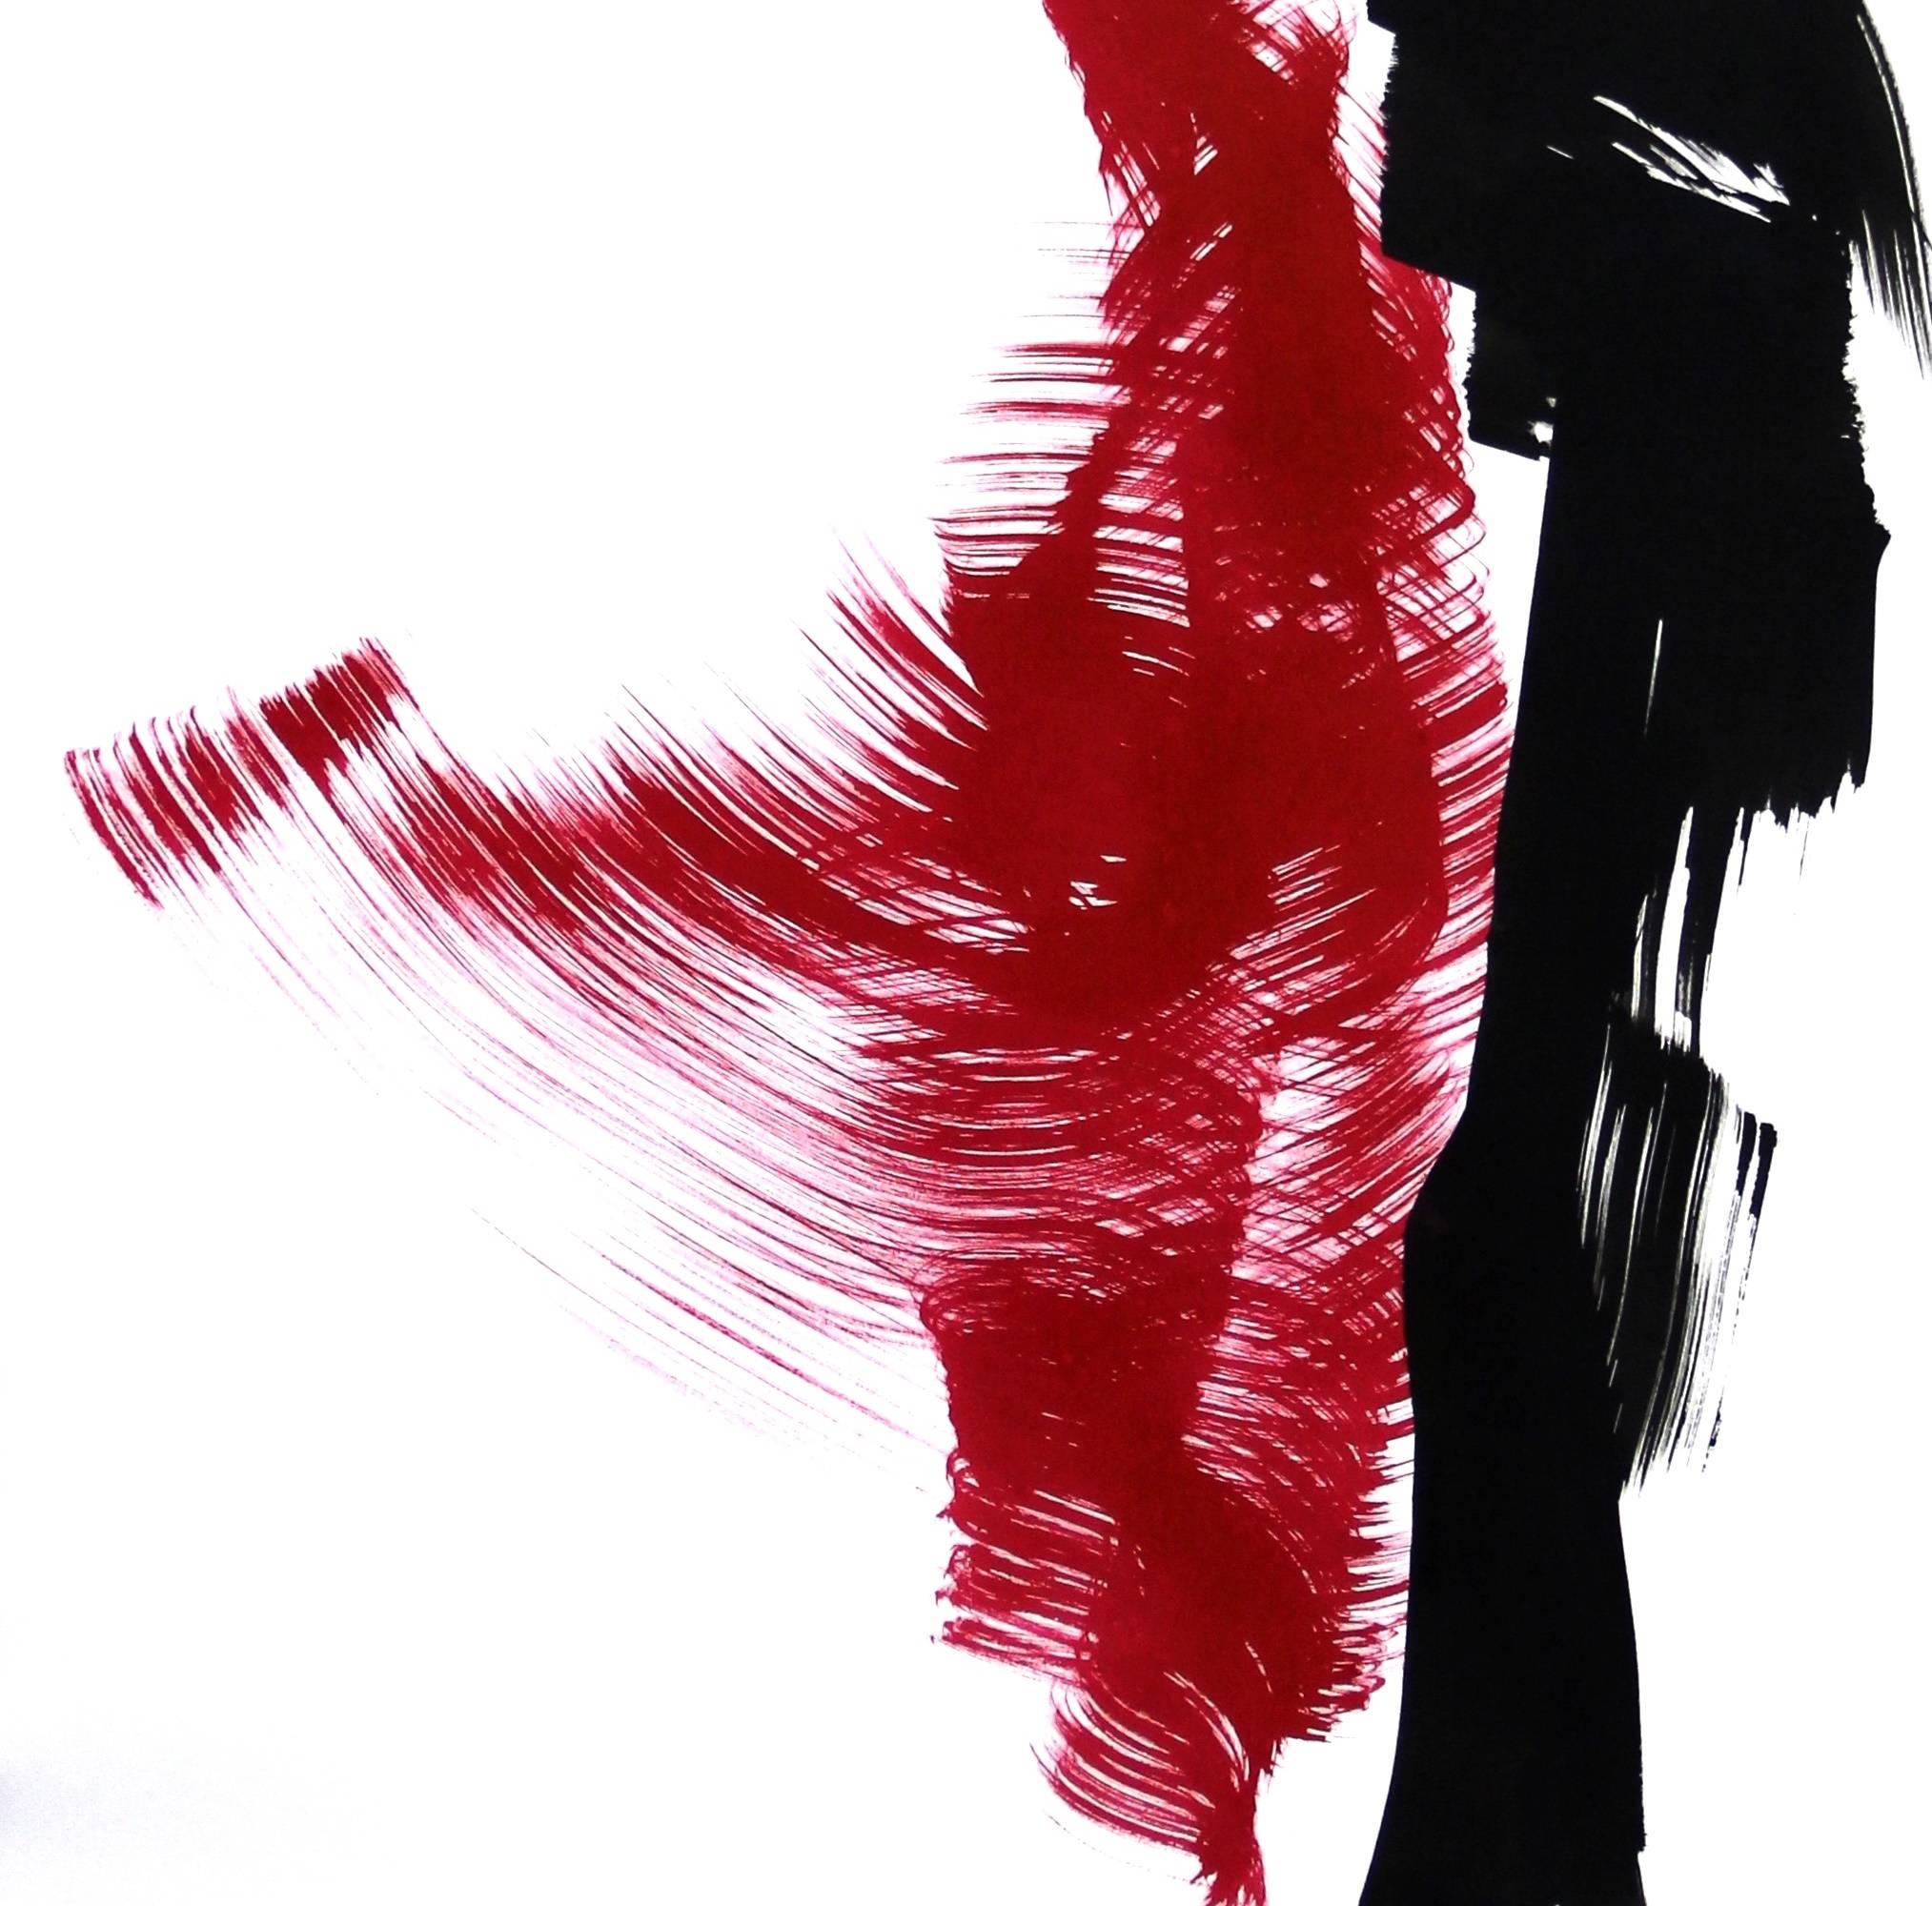 Tänzer 7 – Rote und schwarze Figuren, die Liebe zu Bewegung und Leben umarmen (Abstrakter Expressionismus), Painting, von Bettina Mauel